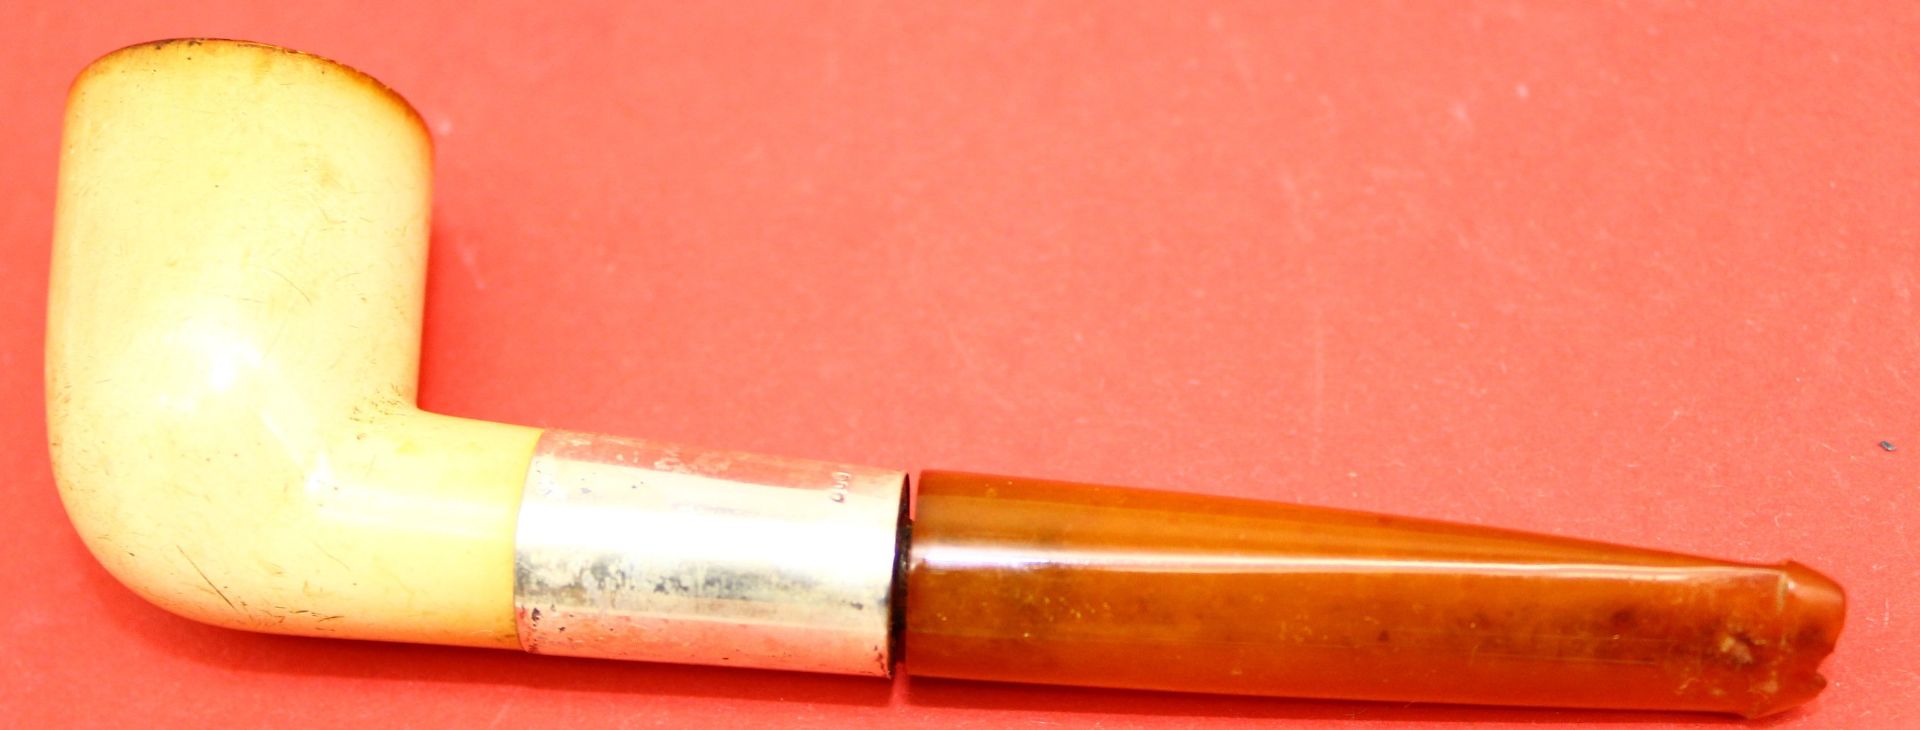 Meerschaumpfeife, Bernstein-Mundstück mit Silber-800- Hals in orig. Etui, L-12 cm - Bild 2 aus 2